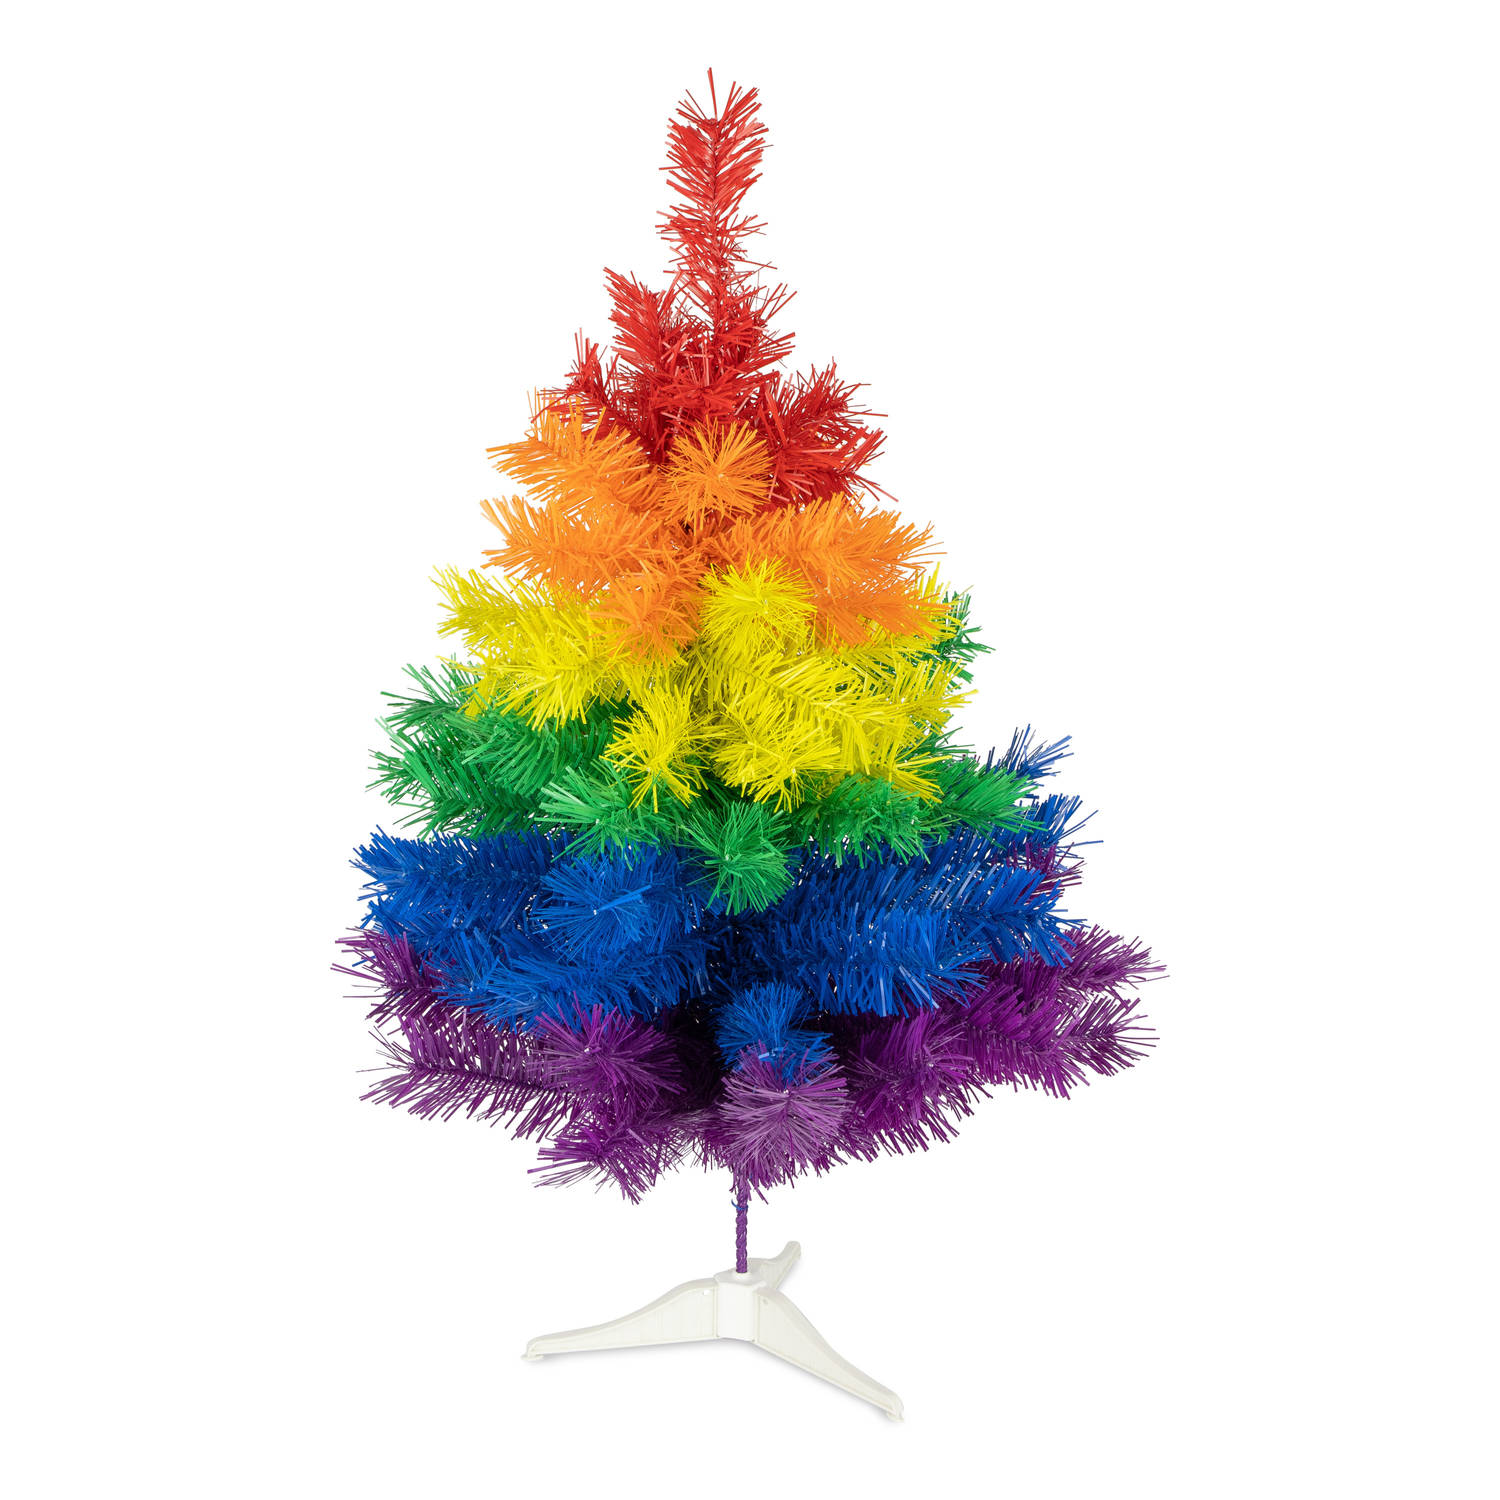 R en W kunst kerstboom regenboog kleuren H60 cmA - kunststof Kunstkerstboom